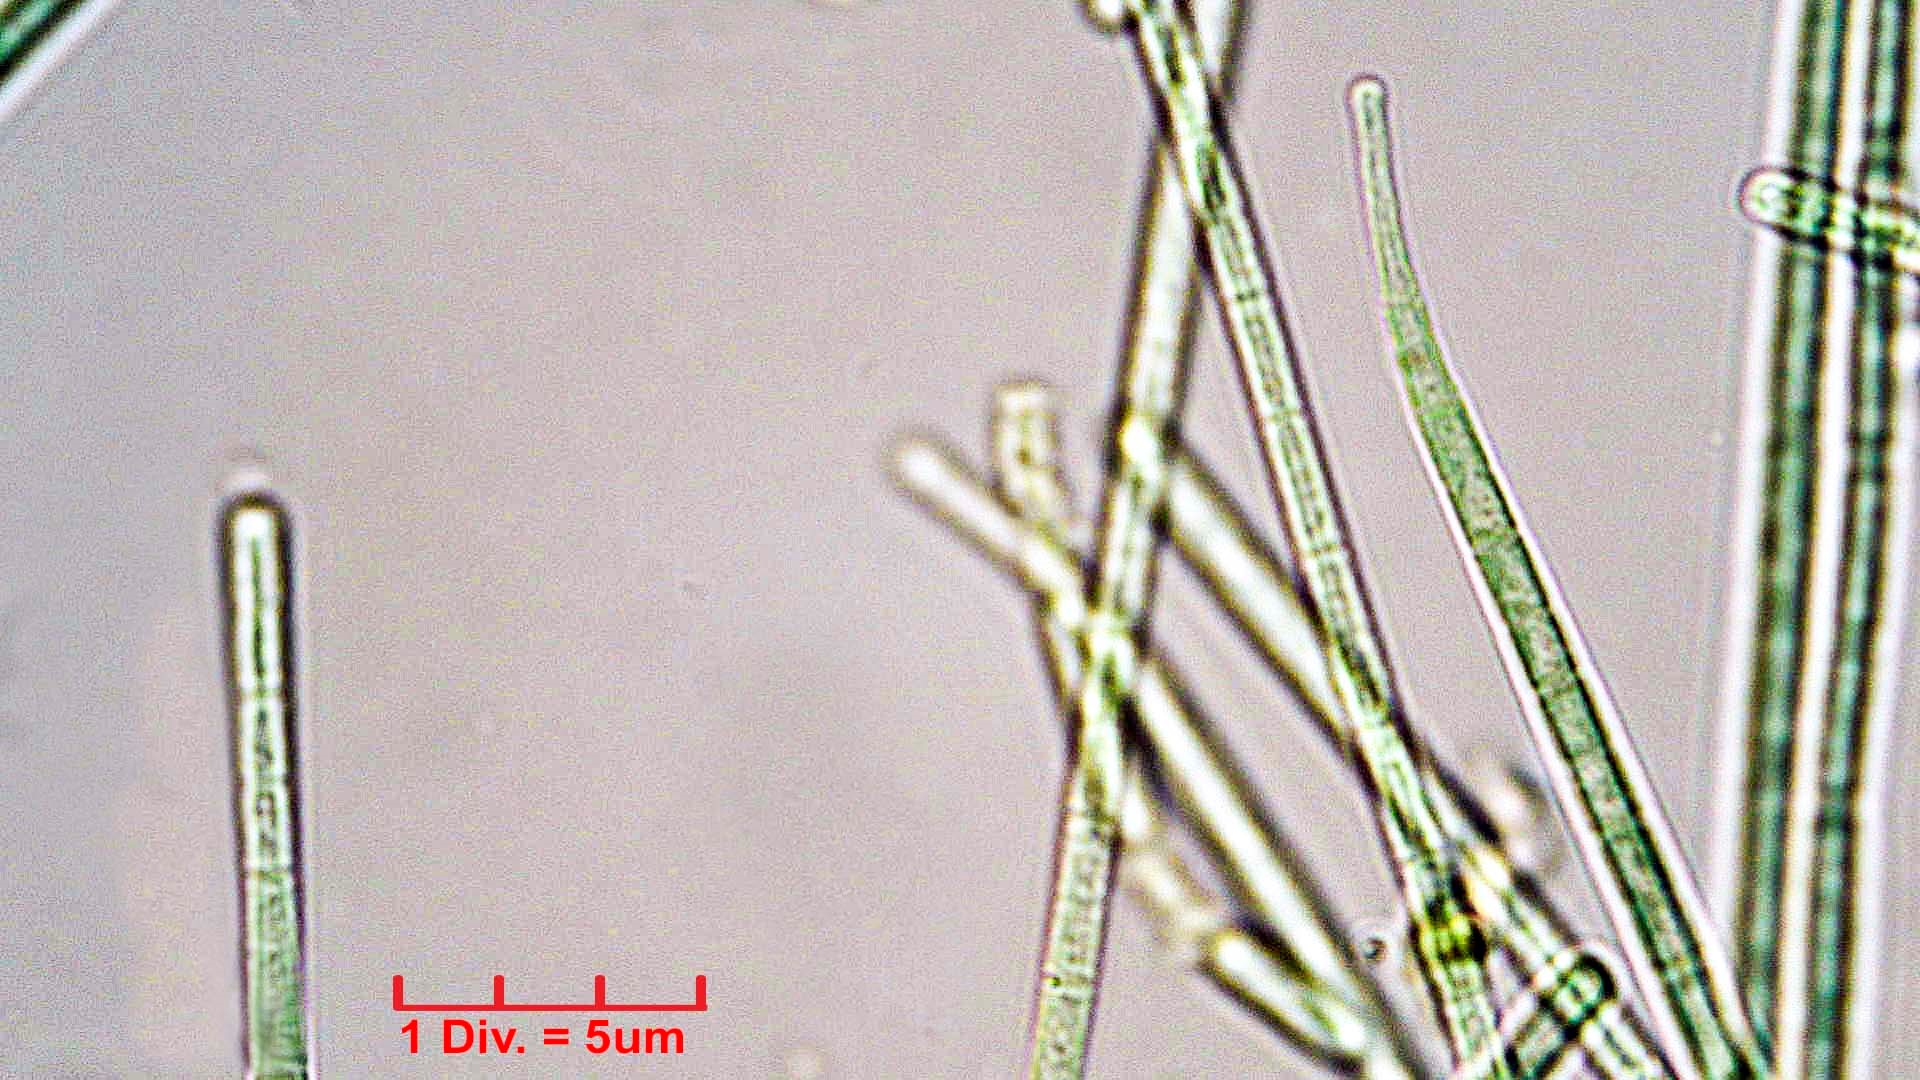 Cyanobacteria/Oscillatoriales/Coleofasciculaceae/Geitlerinema/splendidum/292.jpg